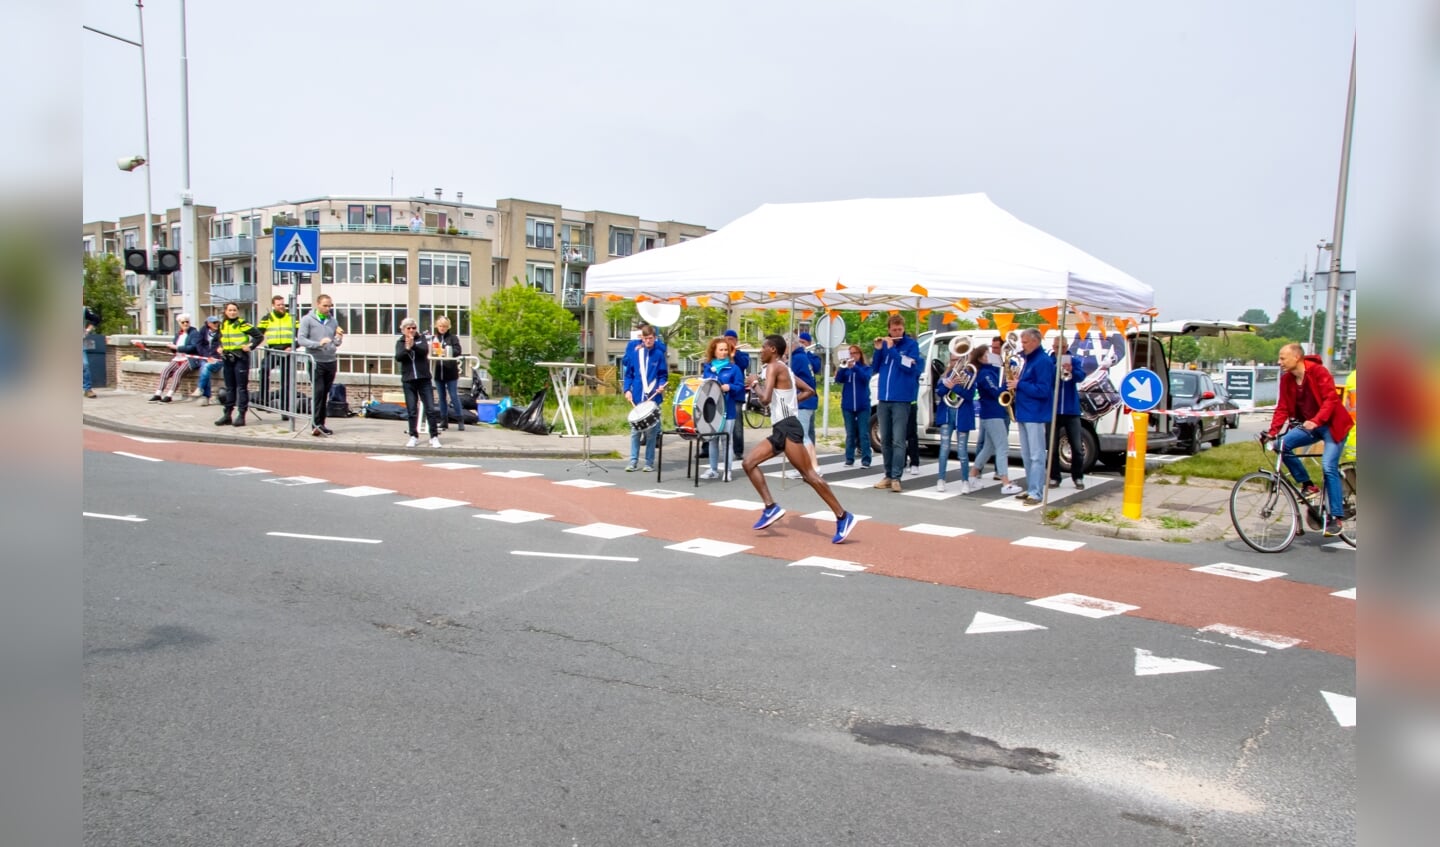 De latere winnaar van de hele marathon, Lema Mekonnen uit Ethiopië, is net vanaf de Zijldijk gekomen en gaat richting de Spanjaardsbrug.